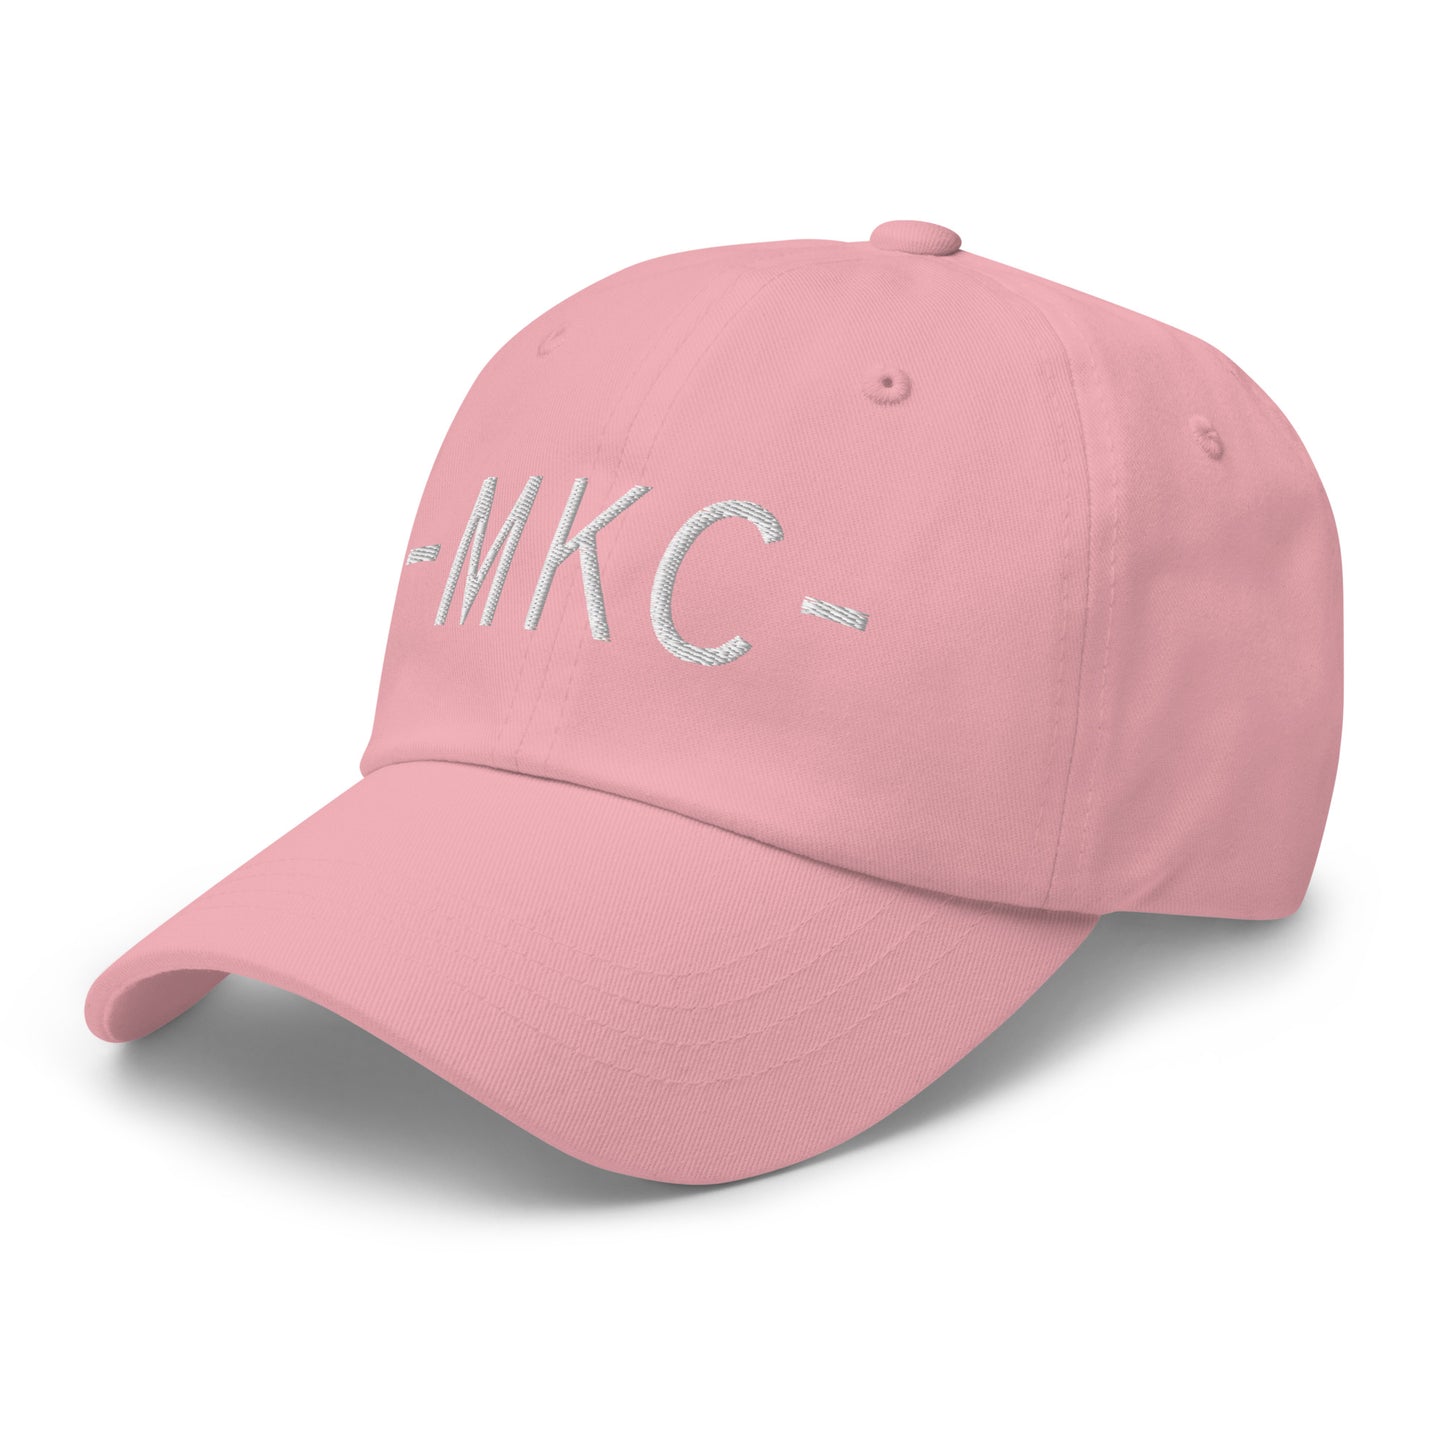 Souvenir Baseball Cap - White • MKC Kansas City • YHM Designs - Image 26